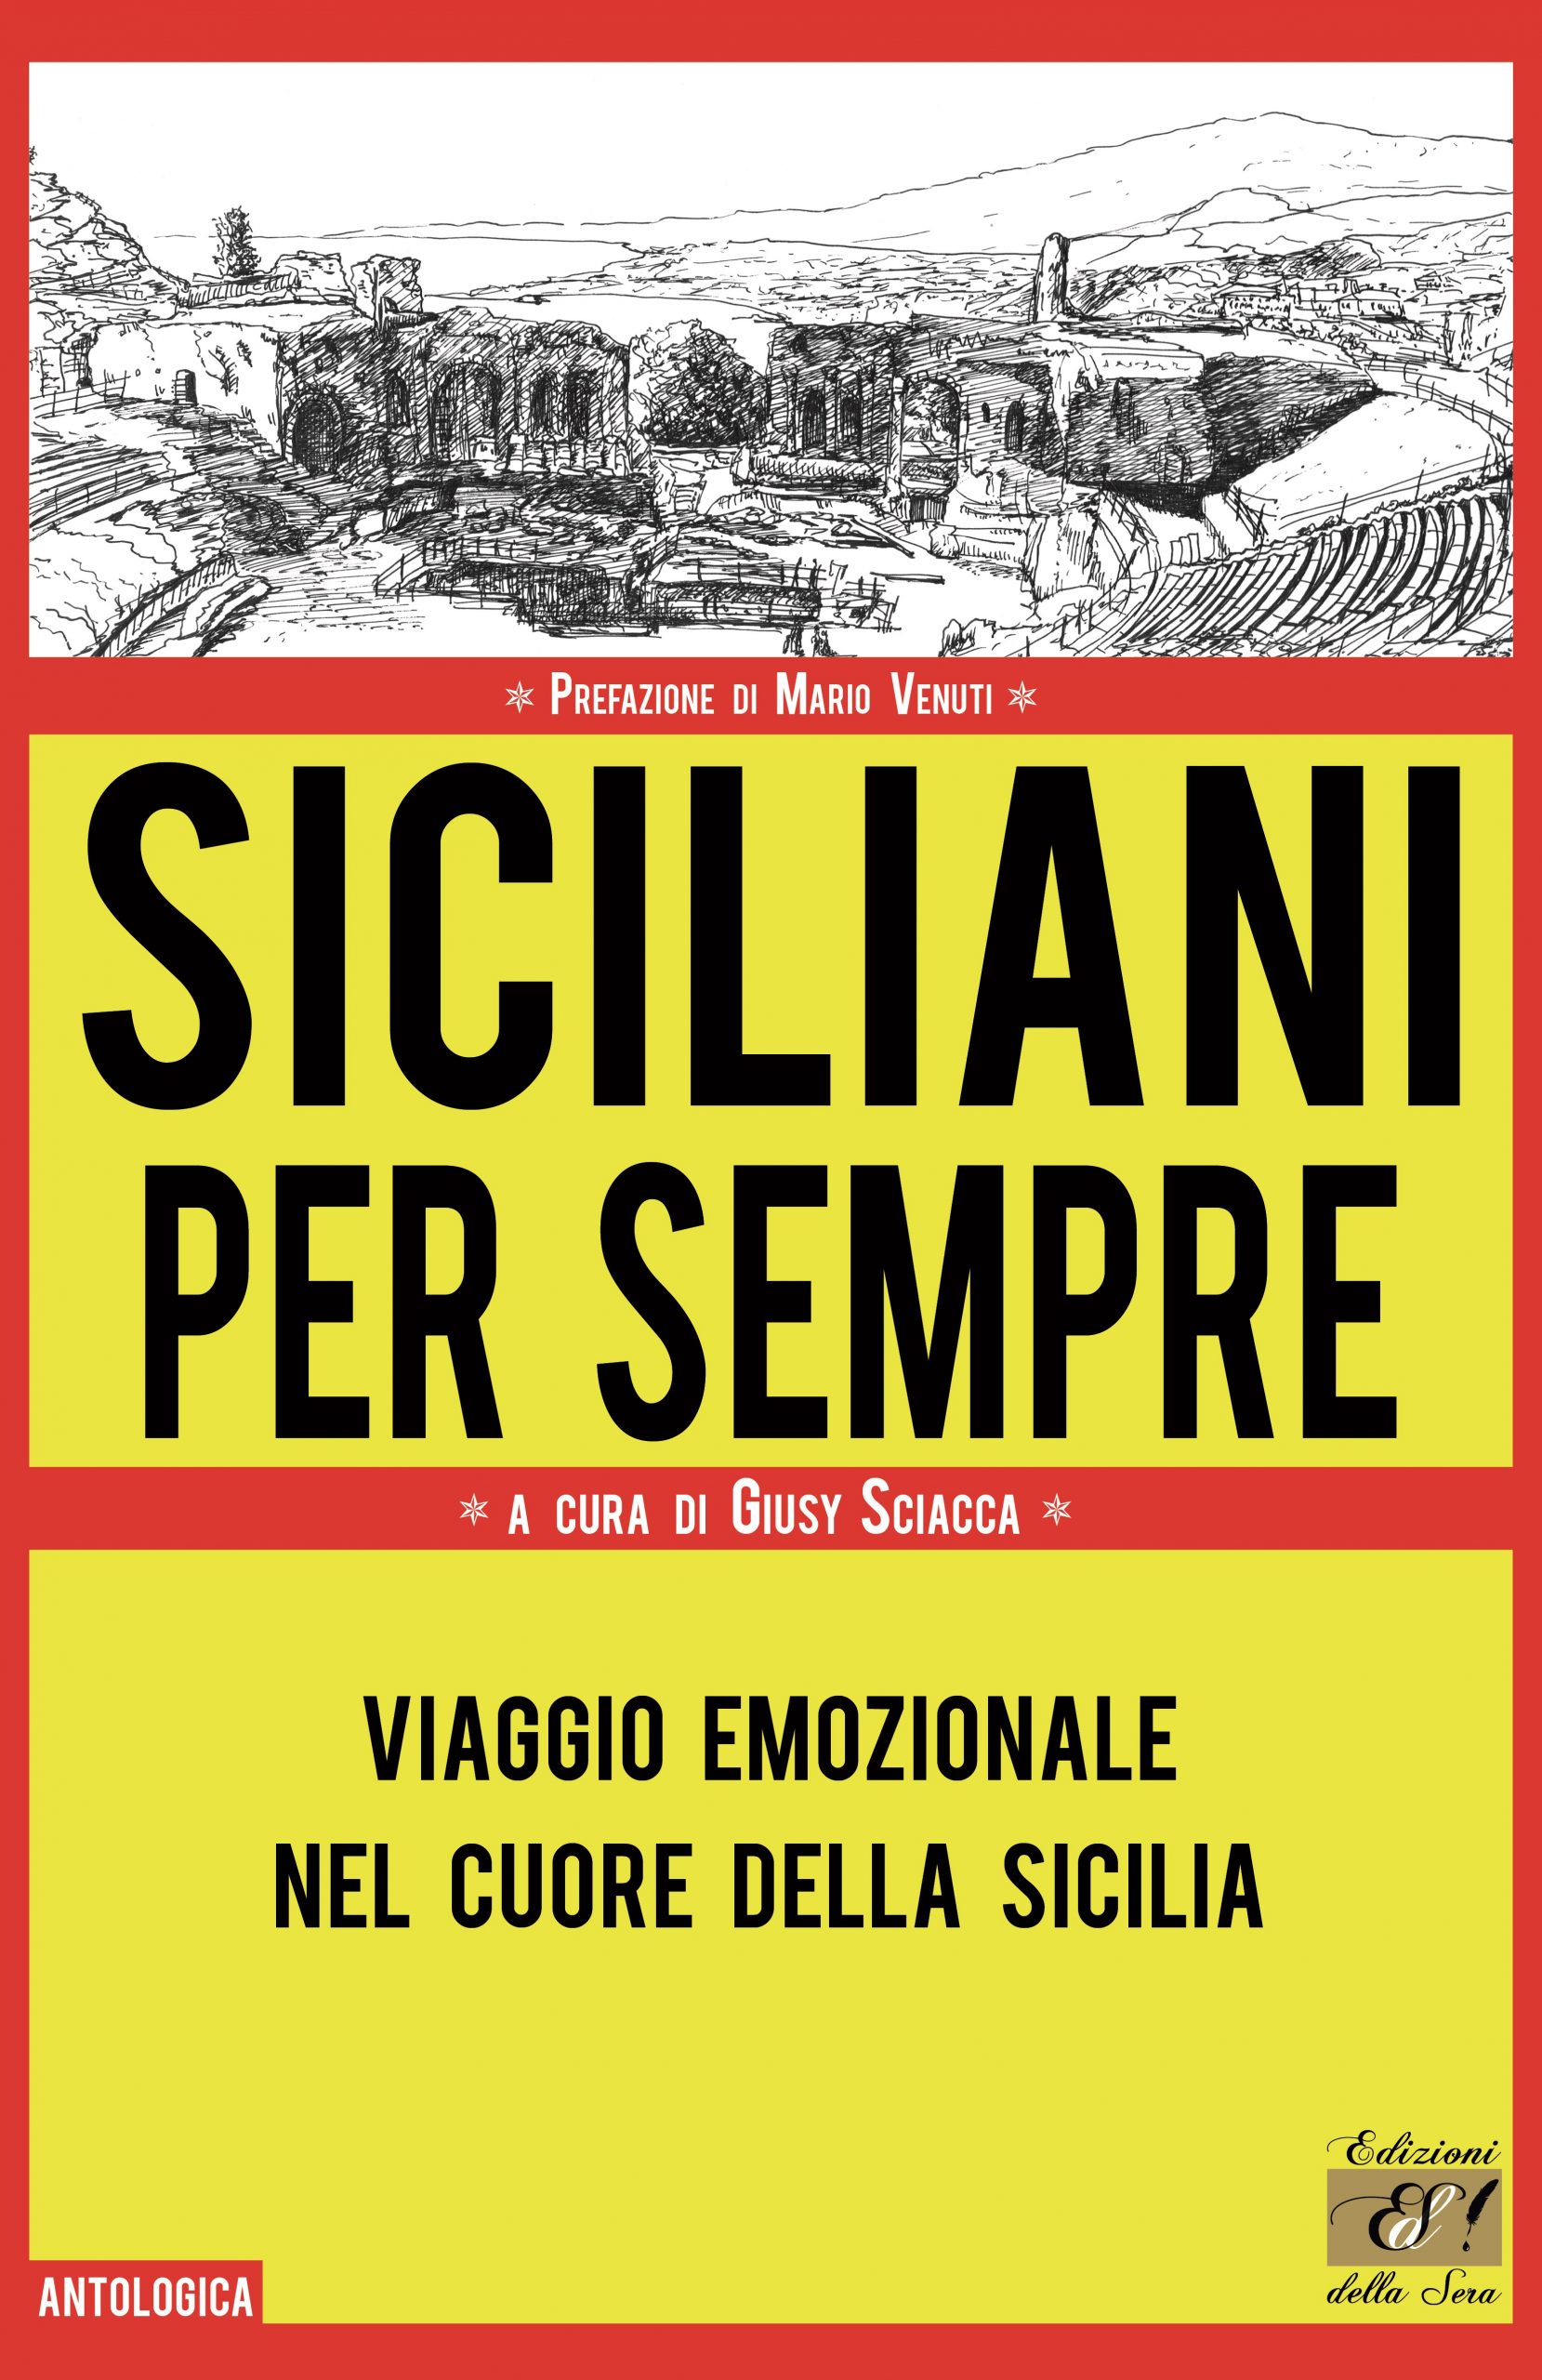 “Siciliani per sempre”, collana antologica a cura di Giusy Sciacca e con la prefazione di Mario Venuti